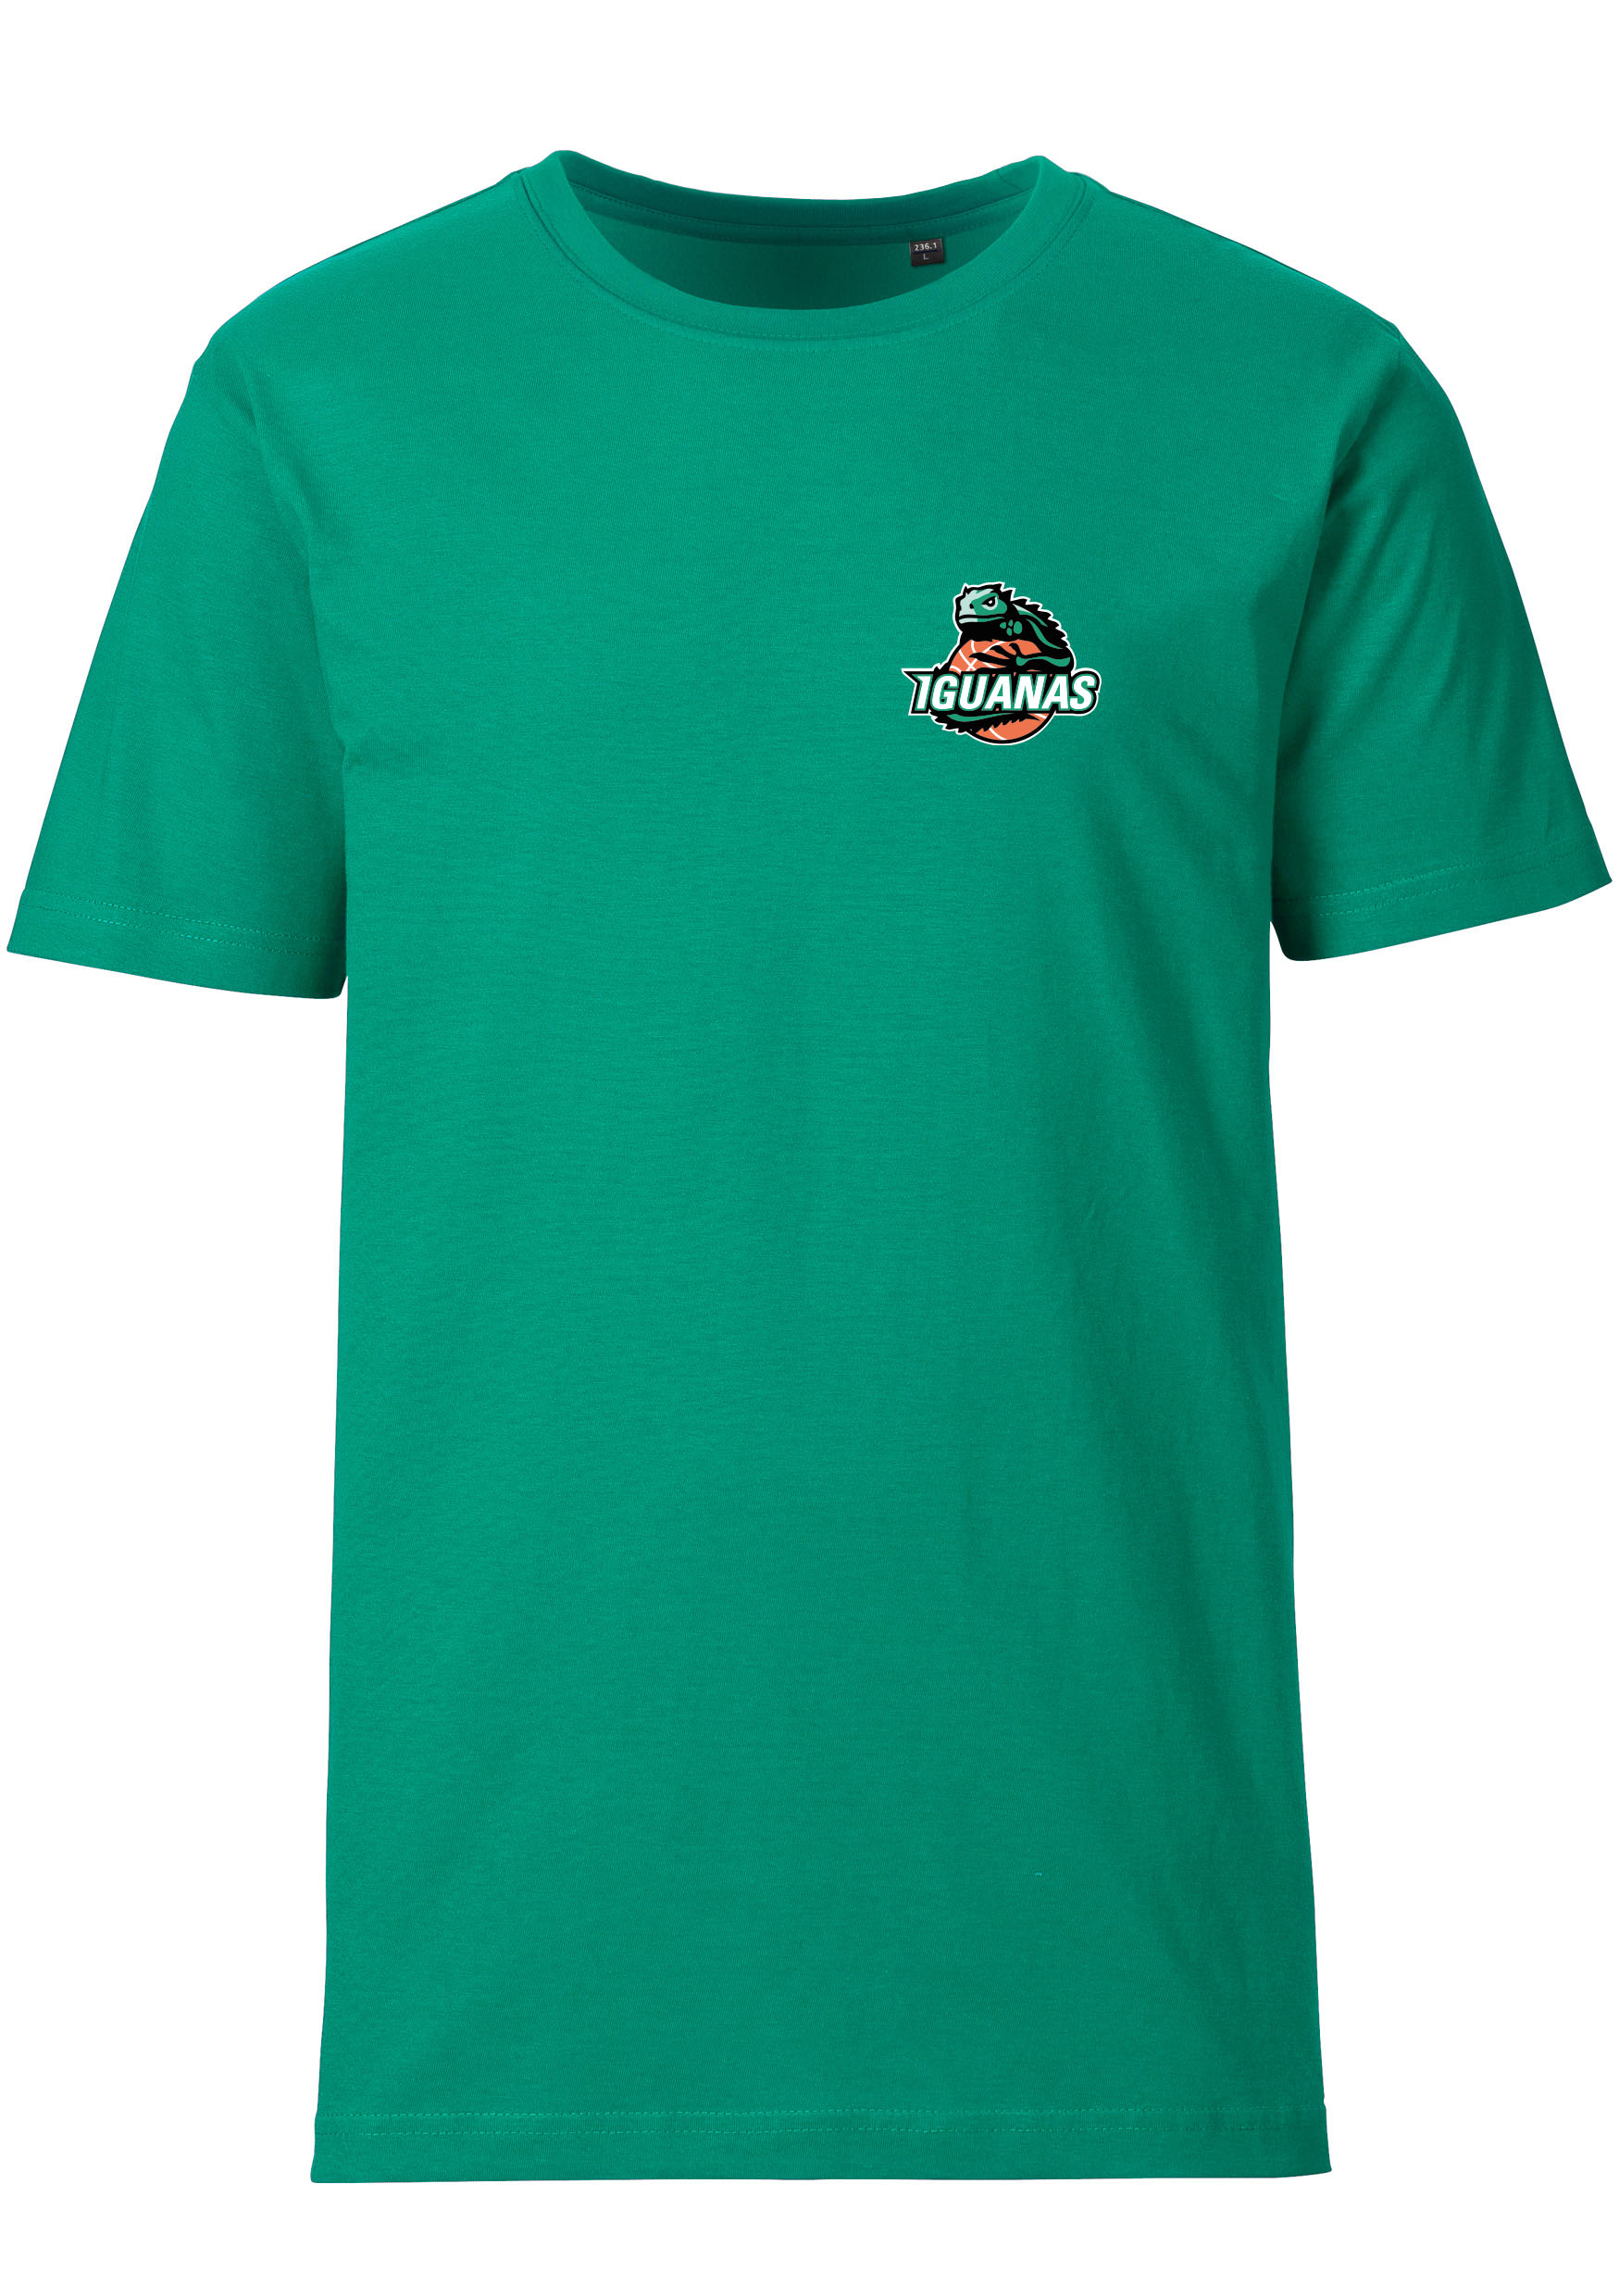 Iguanas T-Shirt Herren Logo klein